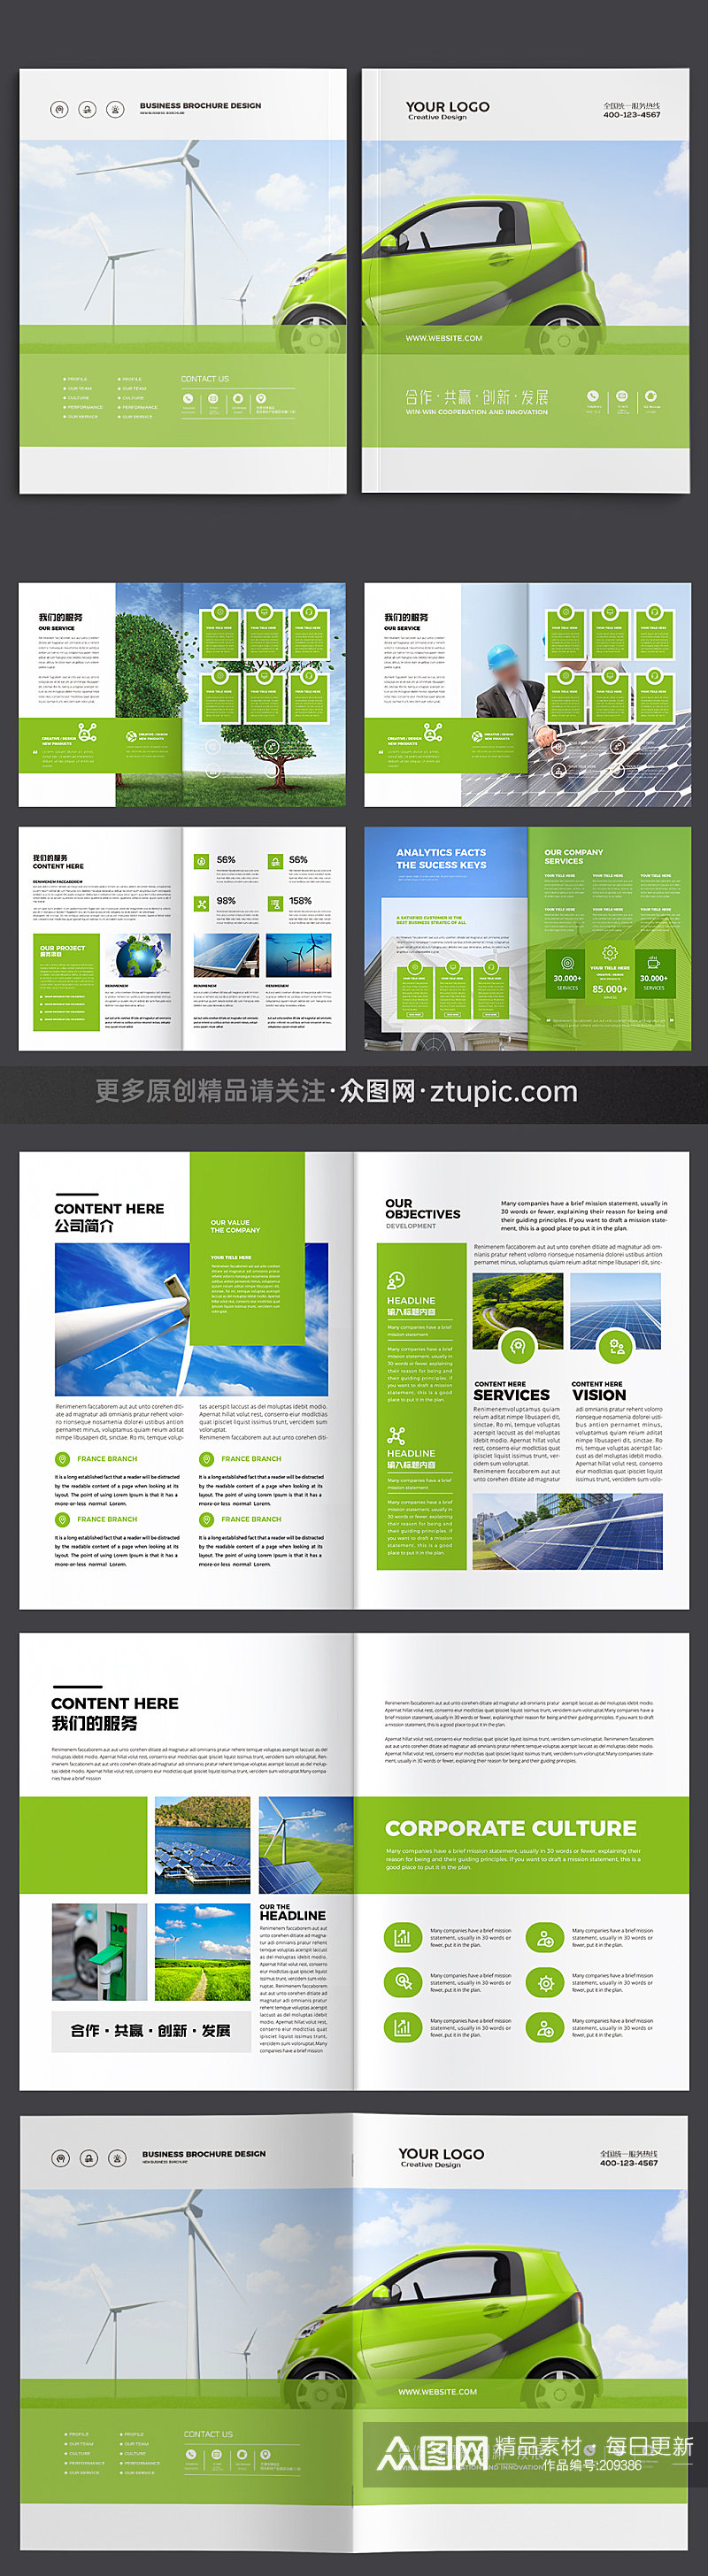 新能源画册企业绿色画册素材